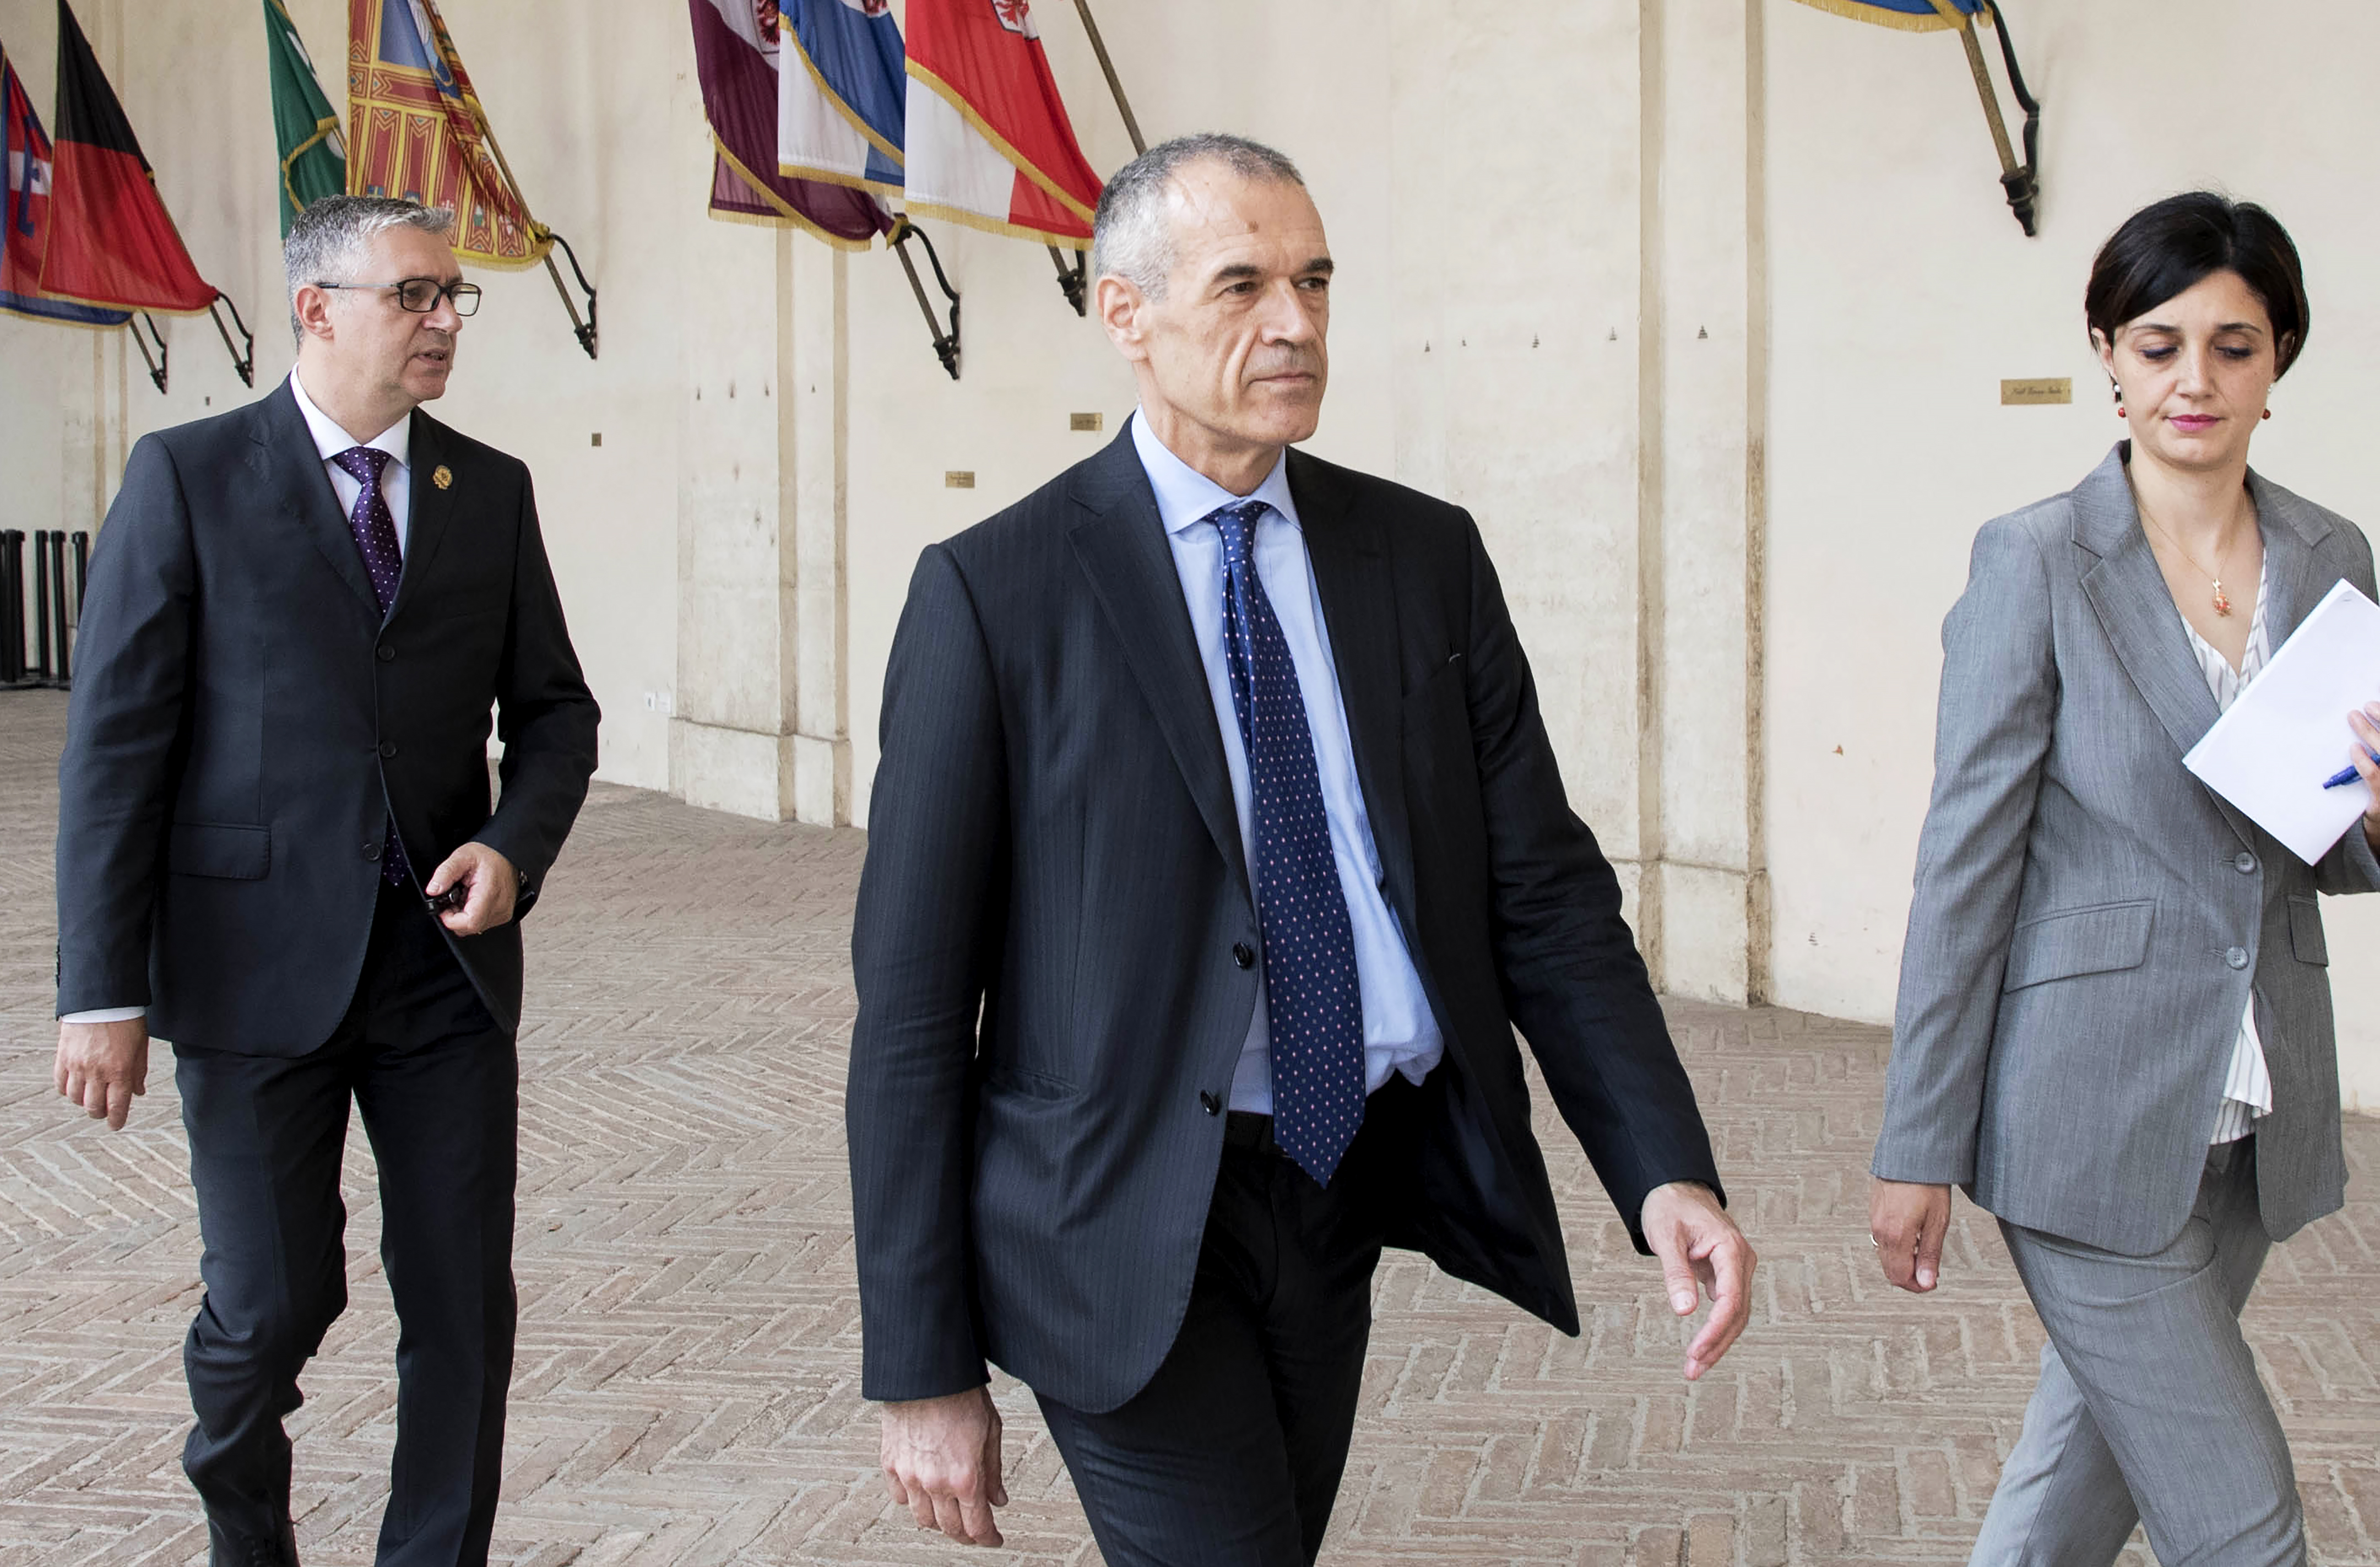 Mr. Ollót kérte fel szakértői kormány megalakítására az olasz államfő